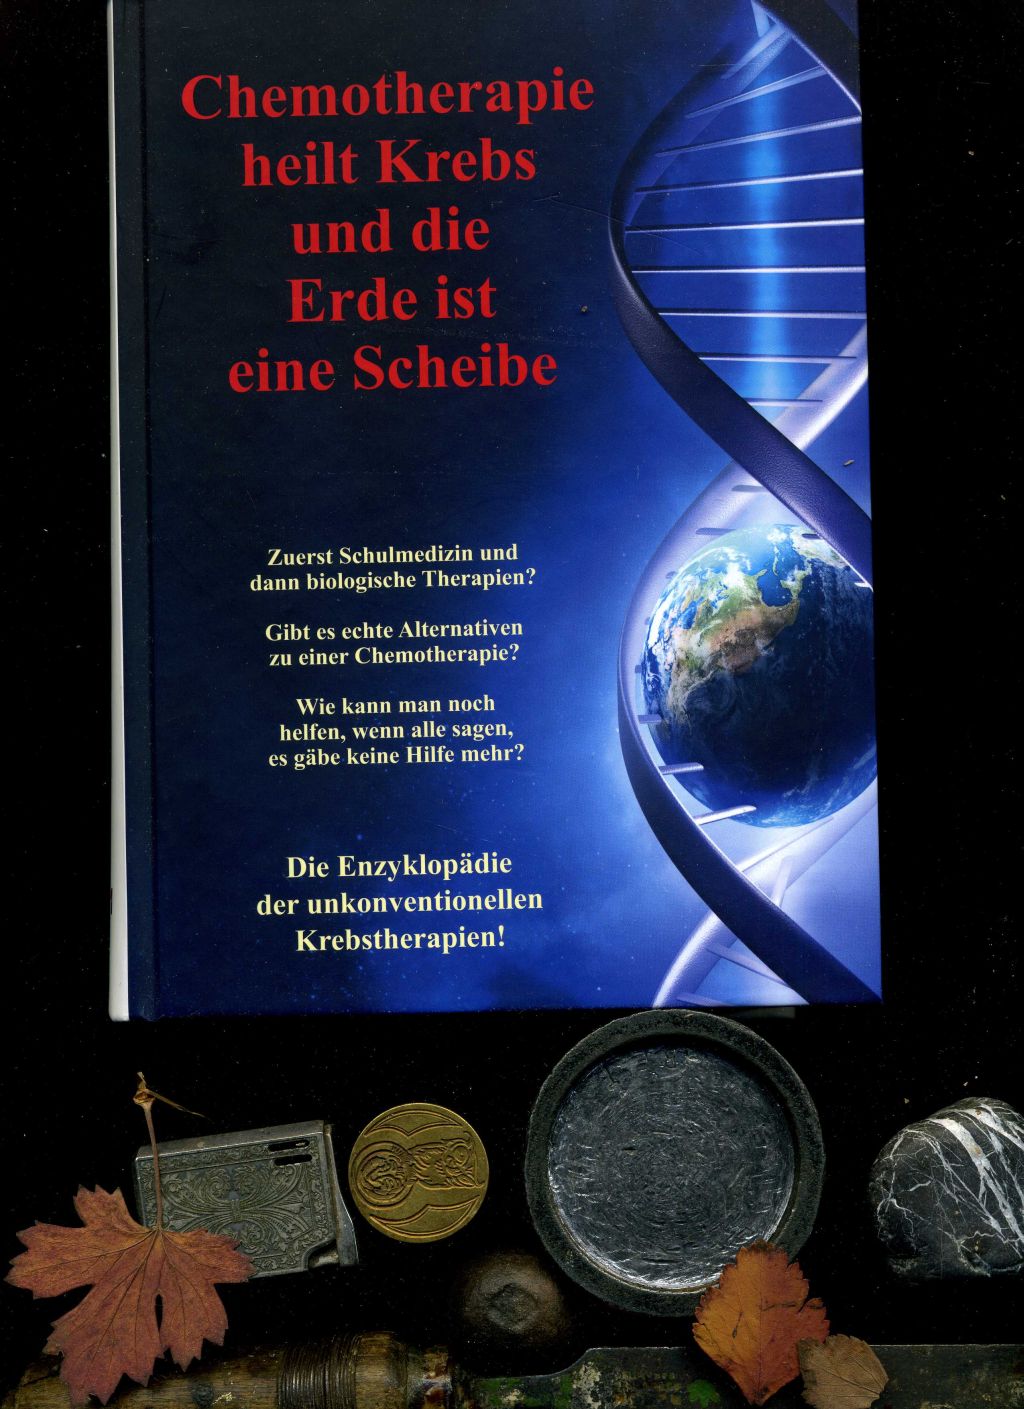 Chemotherapie heilt Krebs und die Erde ist eine Scheibe: Enzyklopädie der unkonventionellen Krebstherapien. - Lothar Hirneise